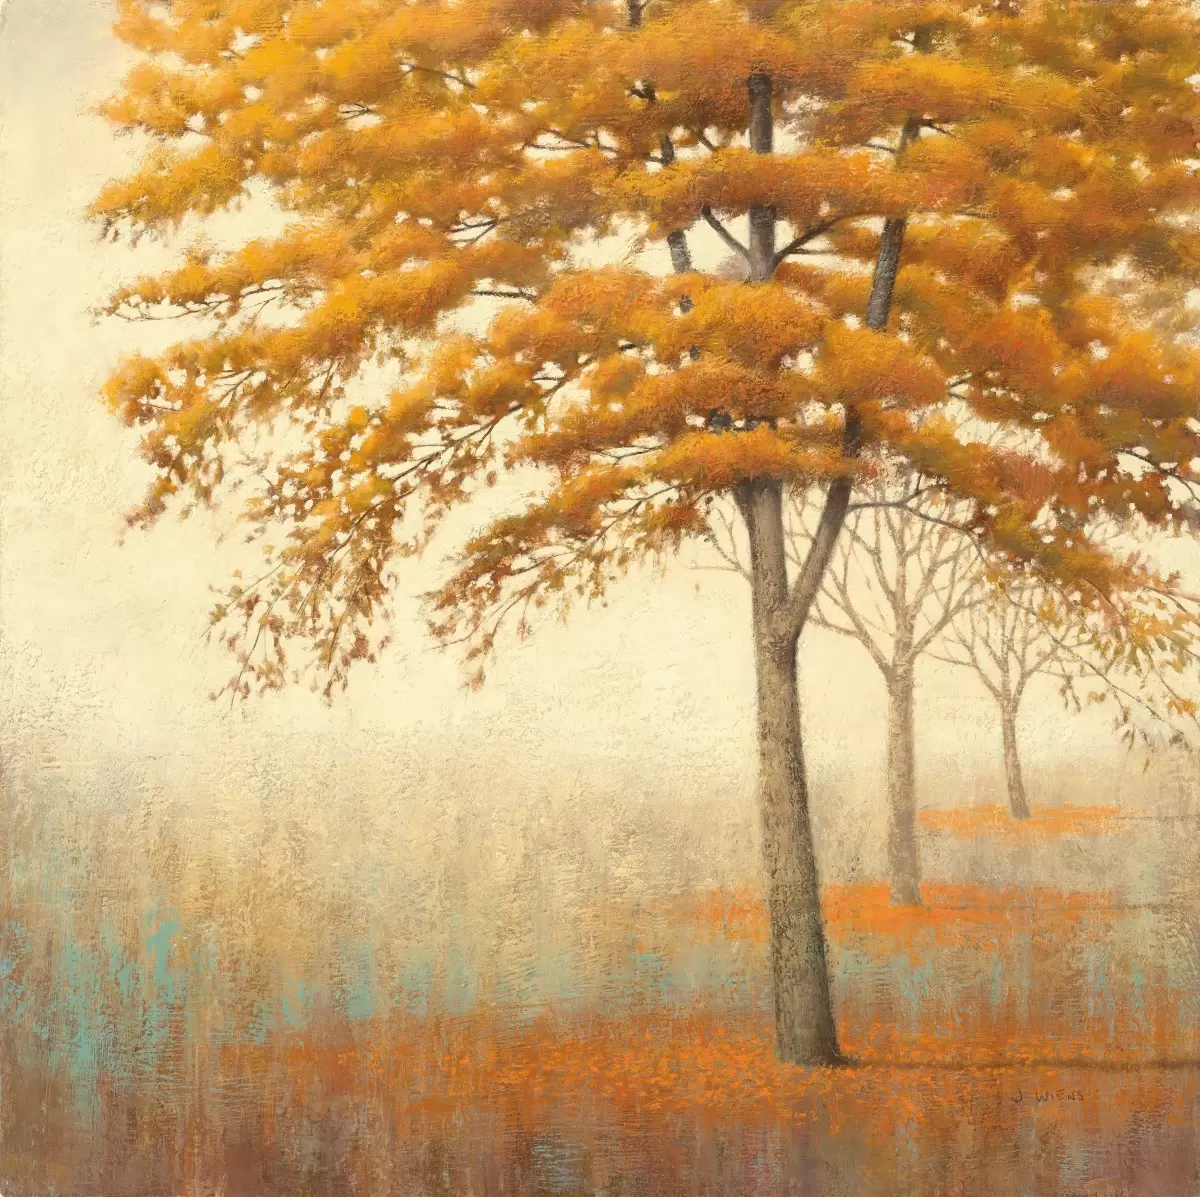 עצים בסתיו - James Wiens - תמונות לסלון רגוע ונעים  - מק''ט: 391036